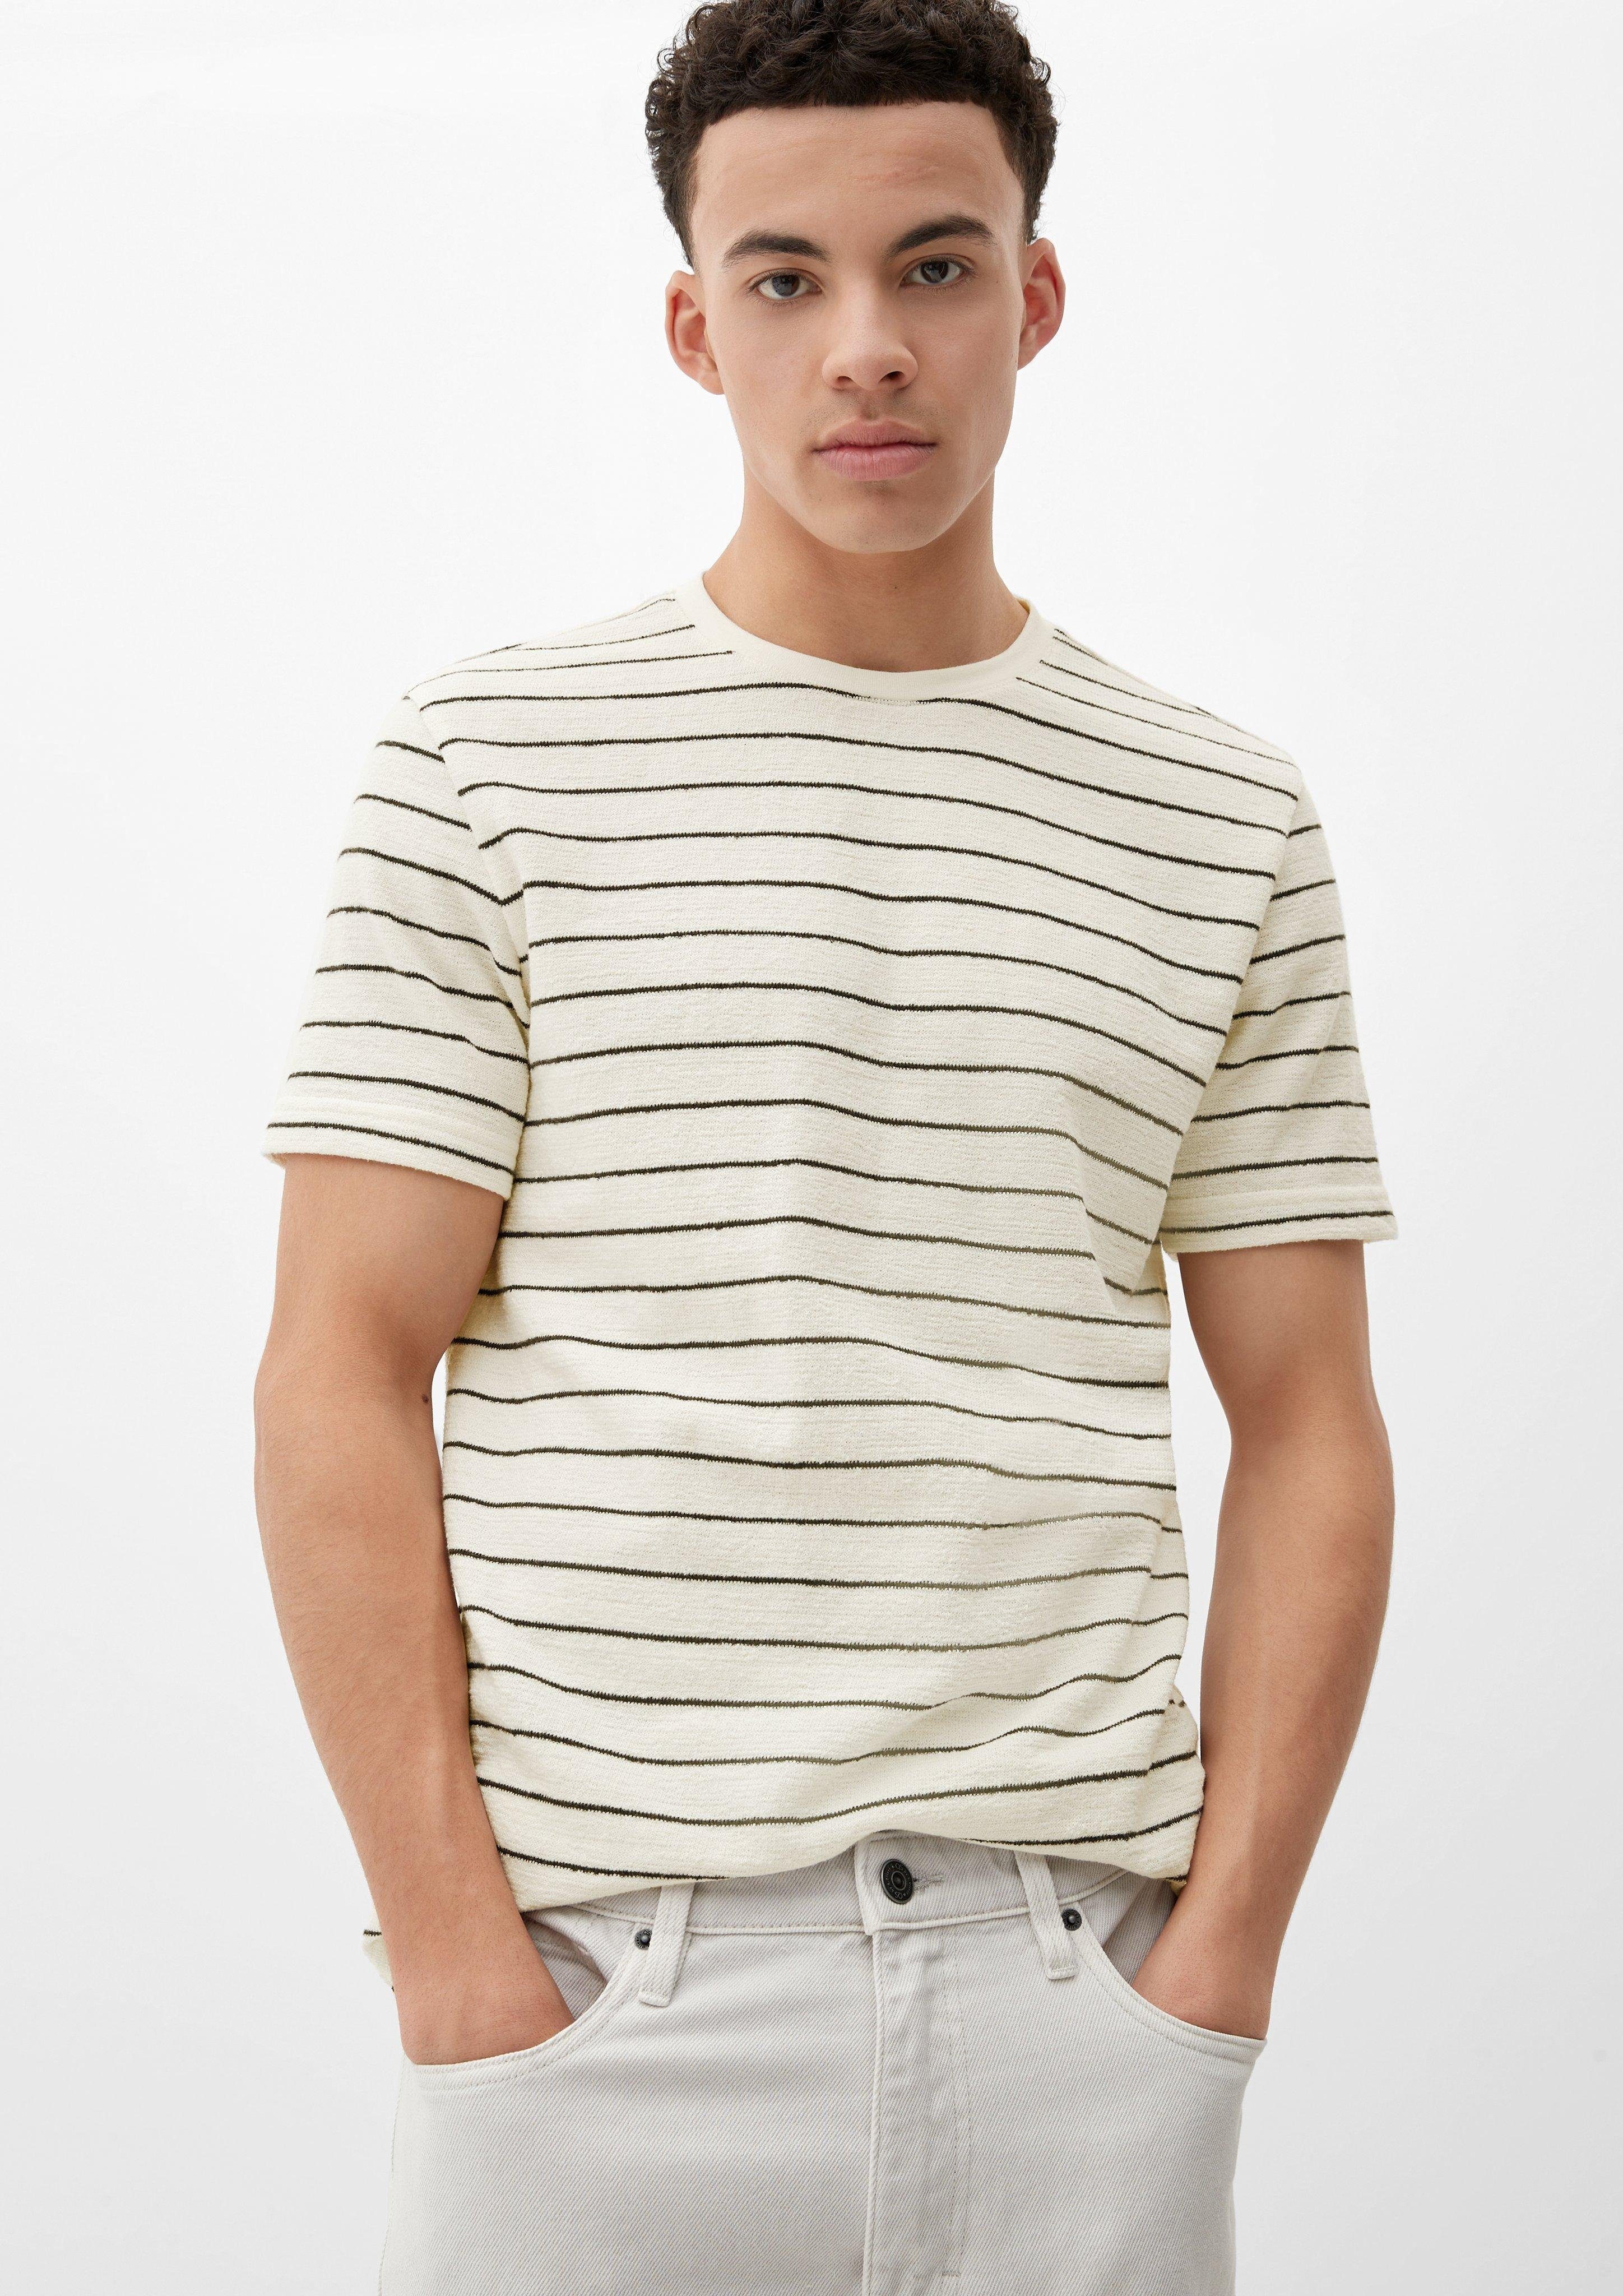 Baumwoll-Frottee beige Label-Patch aus QS helles Kurzarmshirt T-Shirt